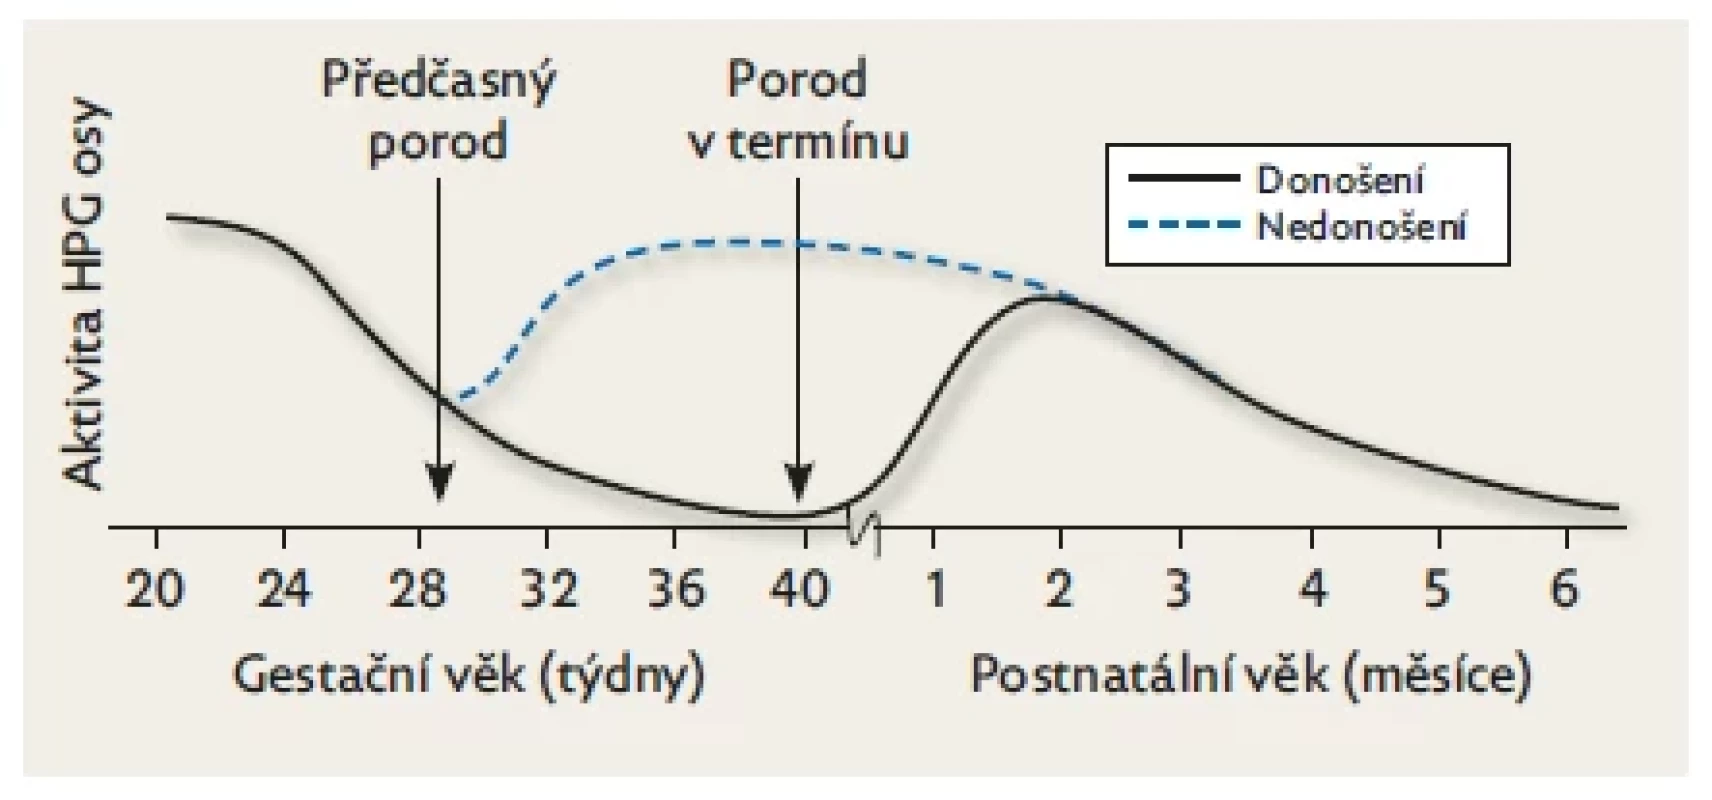 Rozdíly v postnatální aktivitě HPG u donošených a předčasně
narozených dětí.